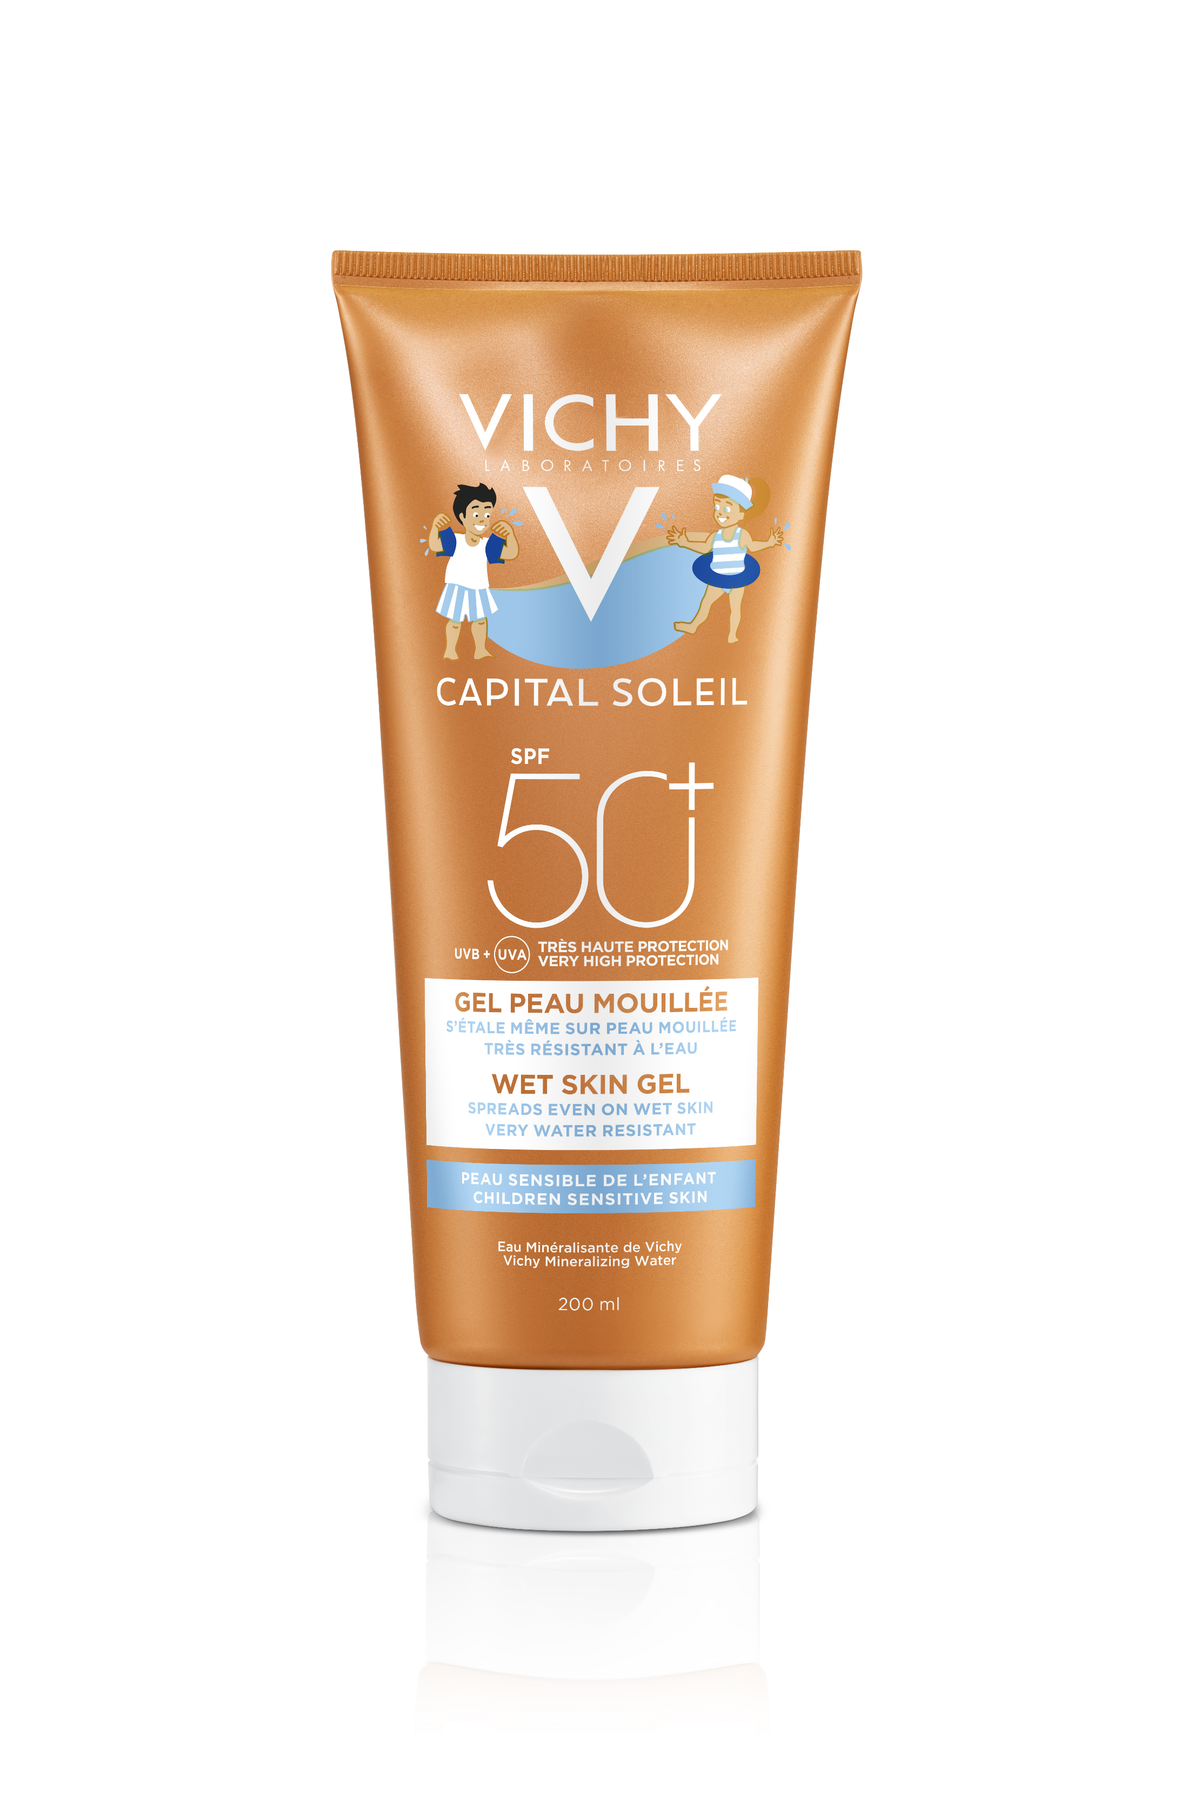 Vichy Capital Soleil Wet Skin Gel SPF50+ Kind